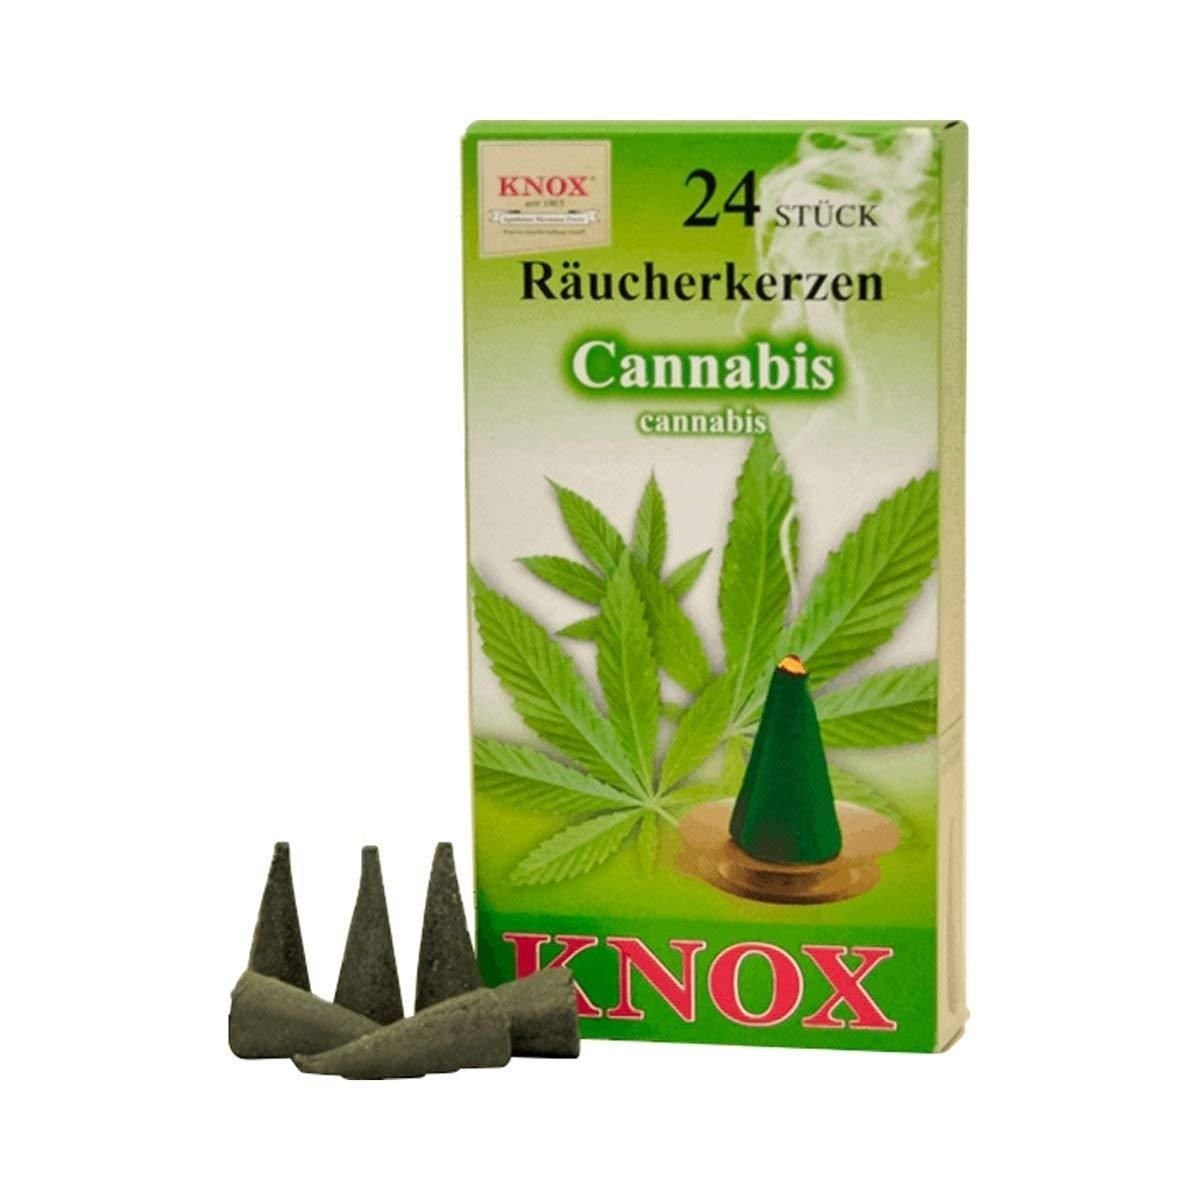 24er Cannabis Räucherkerzen- Packung - 5 Päckchen Räuchermännchen KNOX